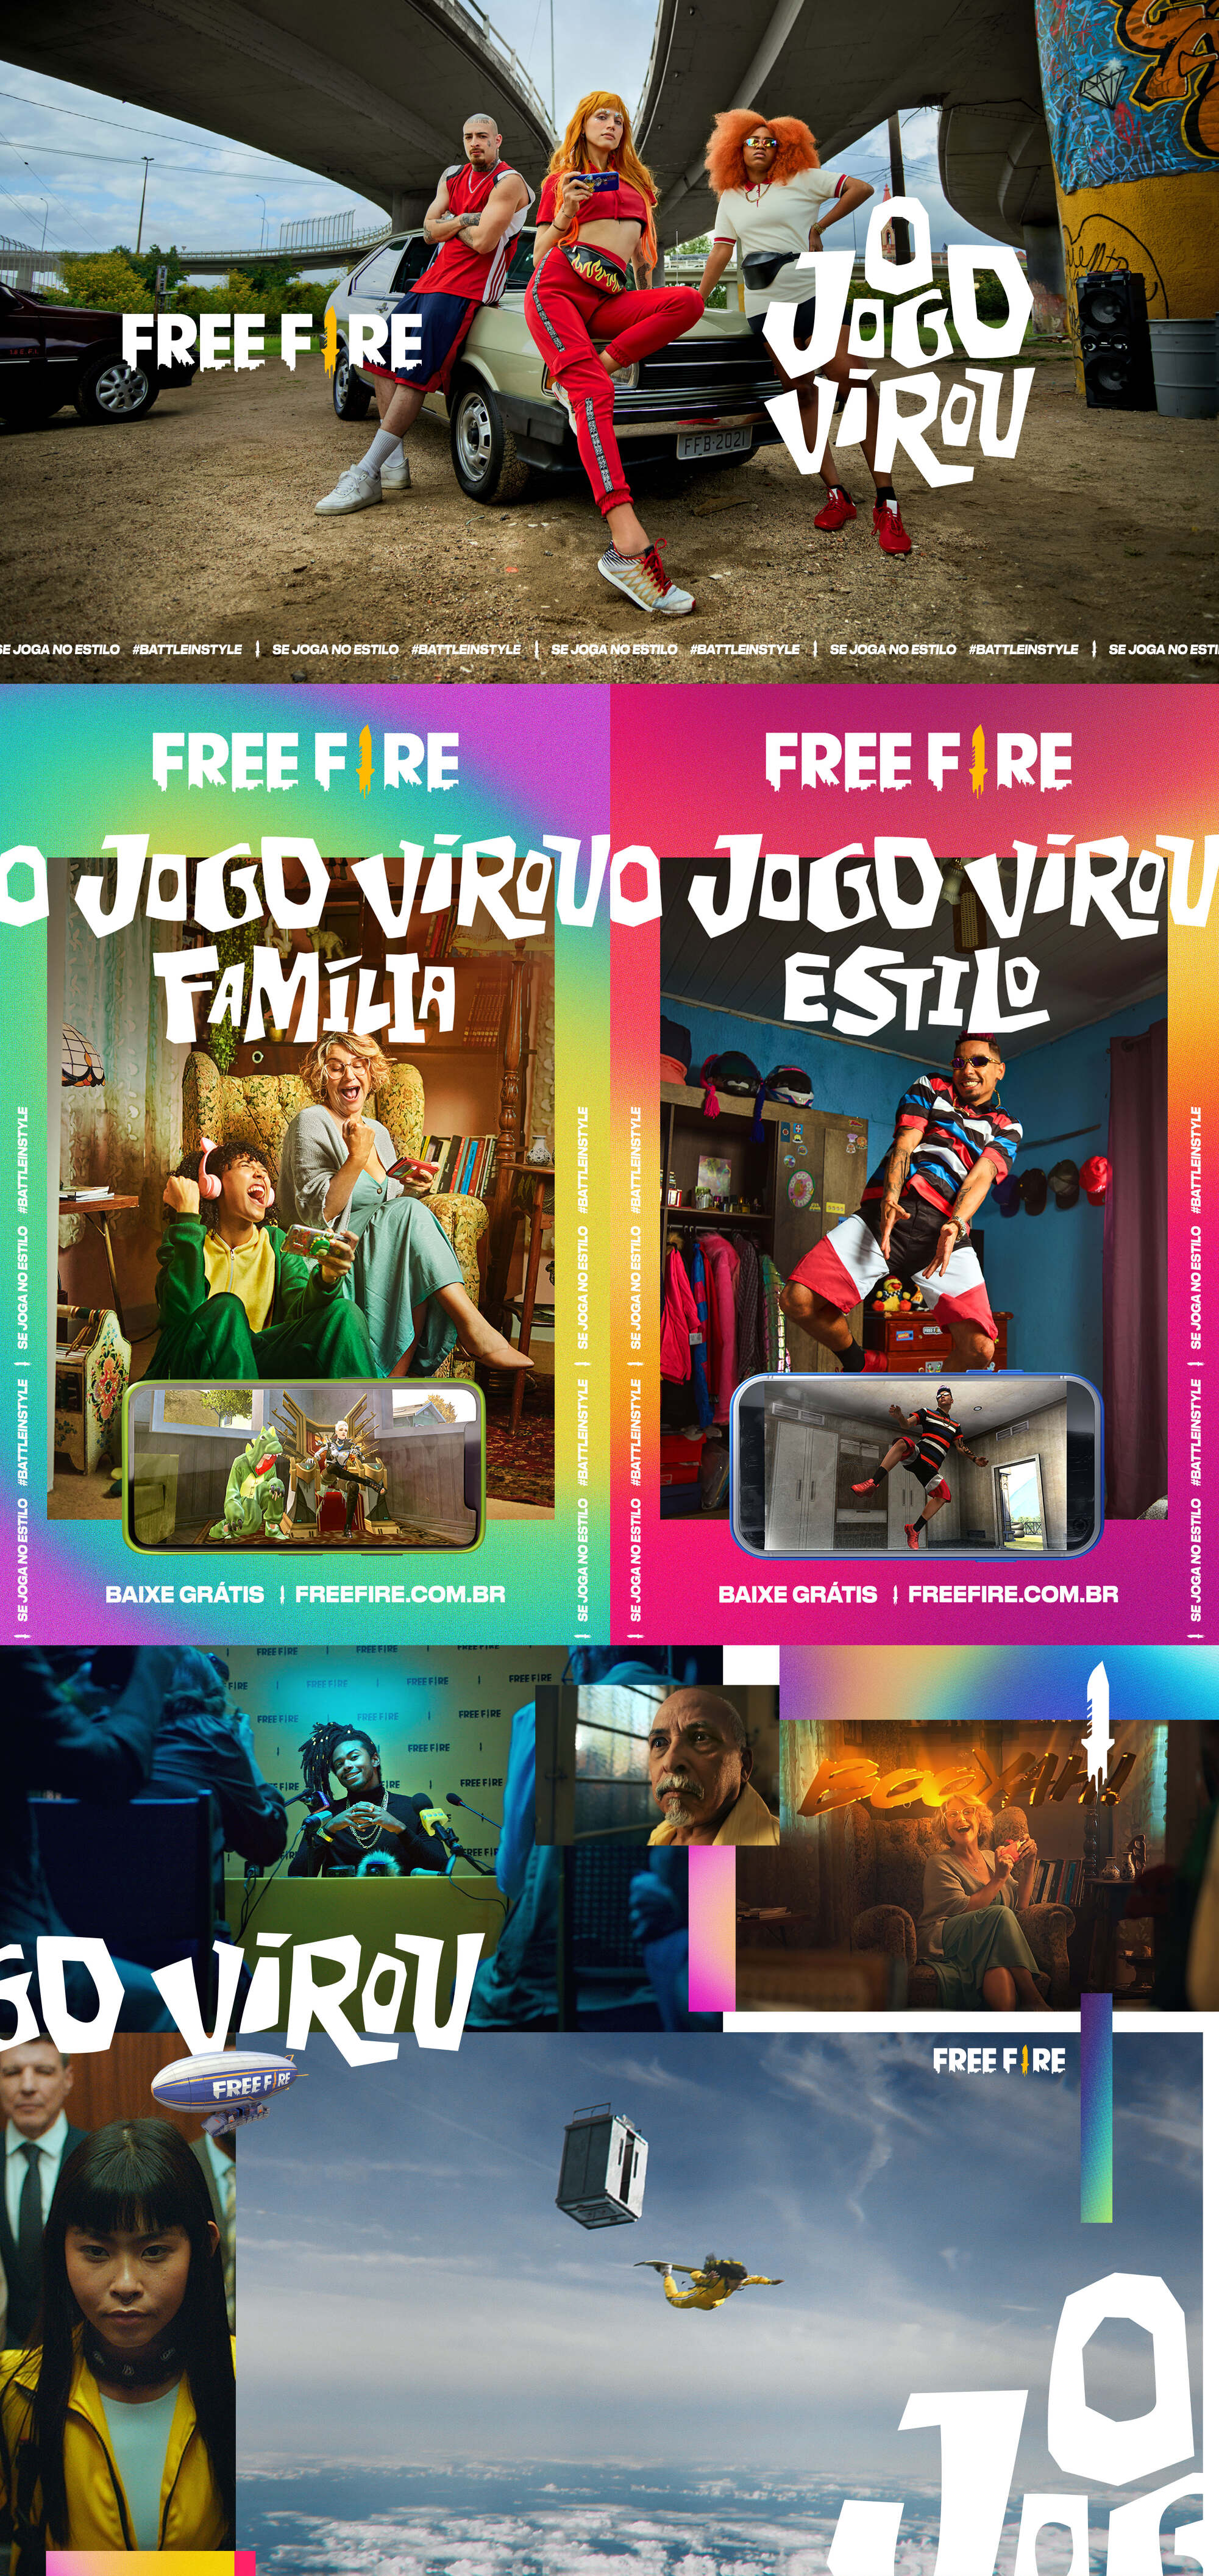 Free Fire - O Jogo Virou 